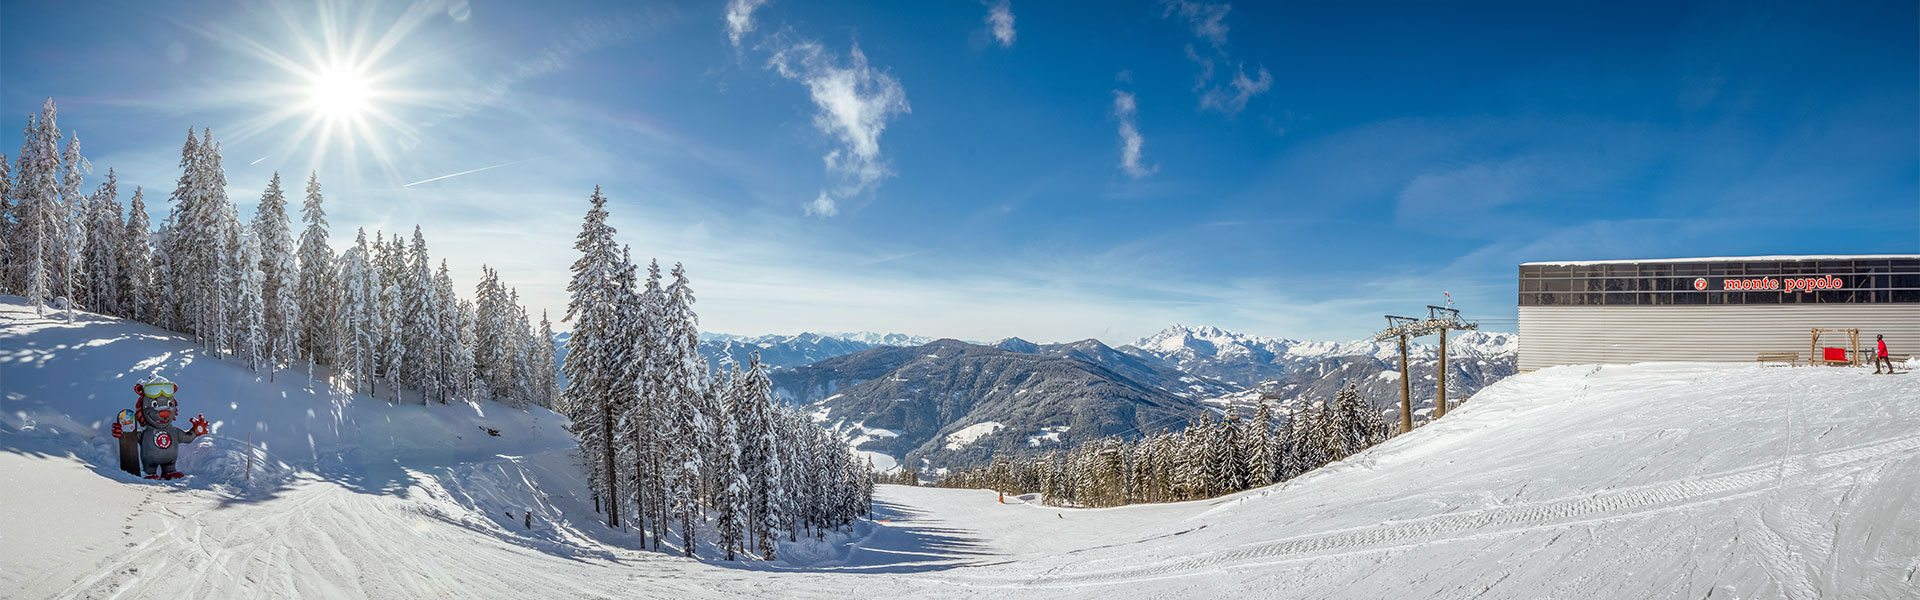 Skigebiet Monte Popolo - Skiurlaub in Eben im Pongau, Ski amadé